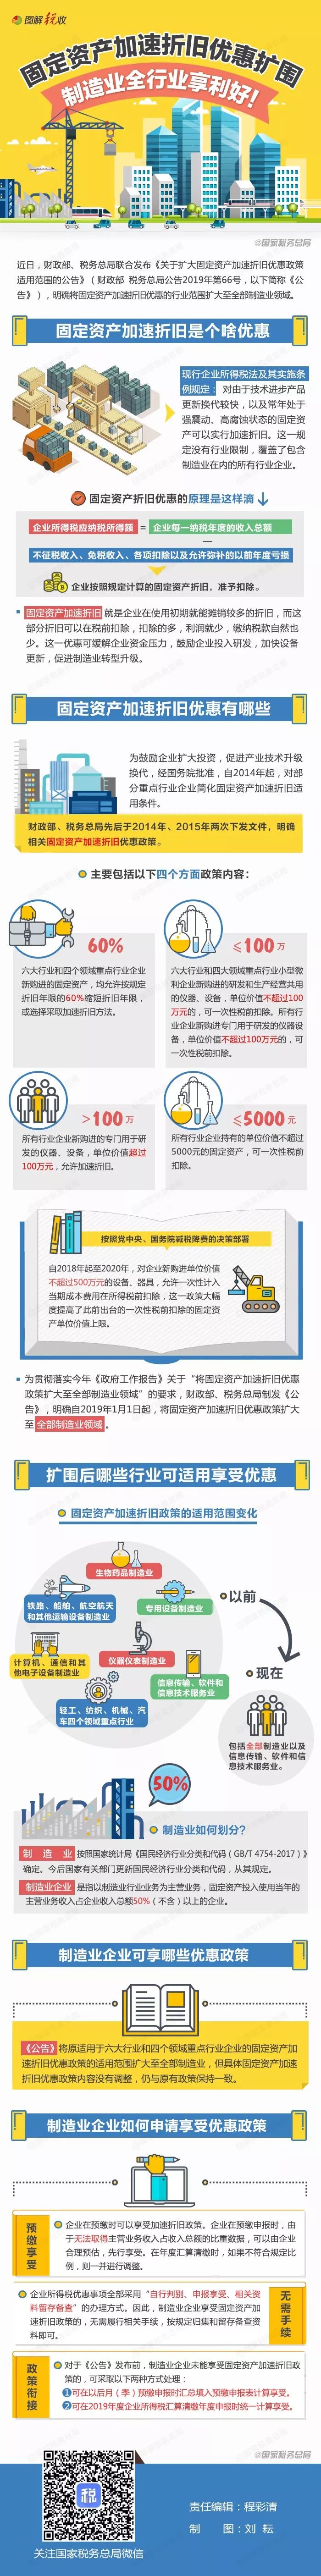 北京税务 自由微信 Freewechat